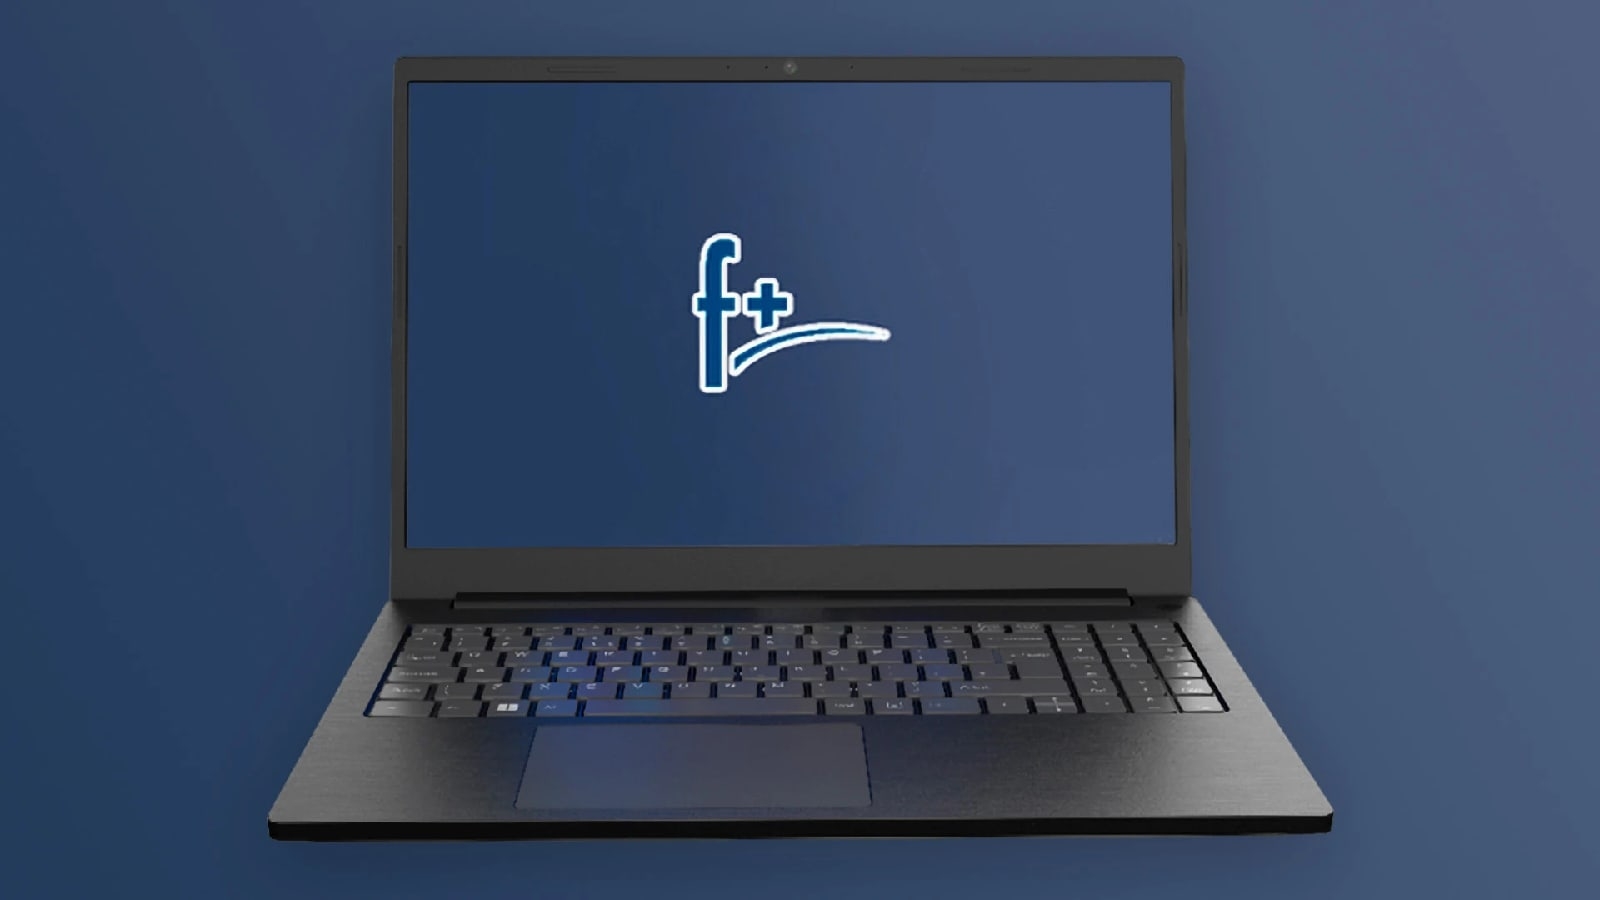 Компания «Ф-Плюс Мобайл» принадлежащая российскому ИТ-дистрибутору «Марвел-Дистрибуция», в ноябре 2022 года выпустит для розничных продаж линейку ноутбуков под брендом F+ .